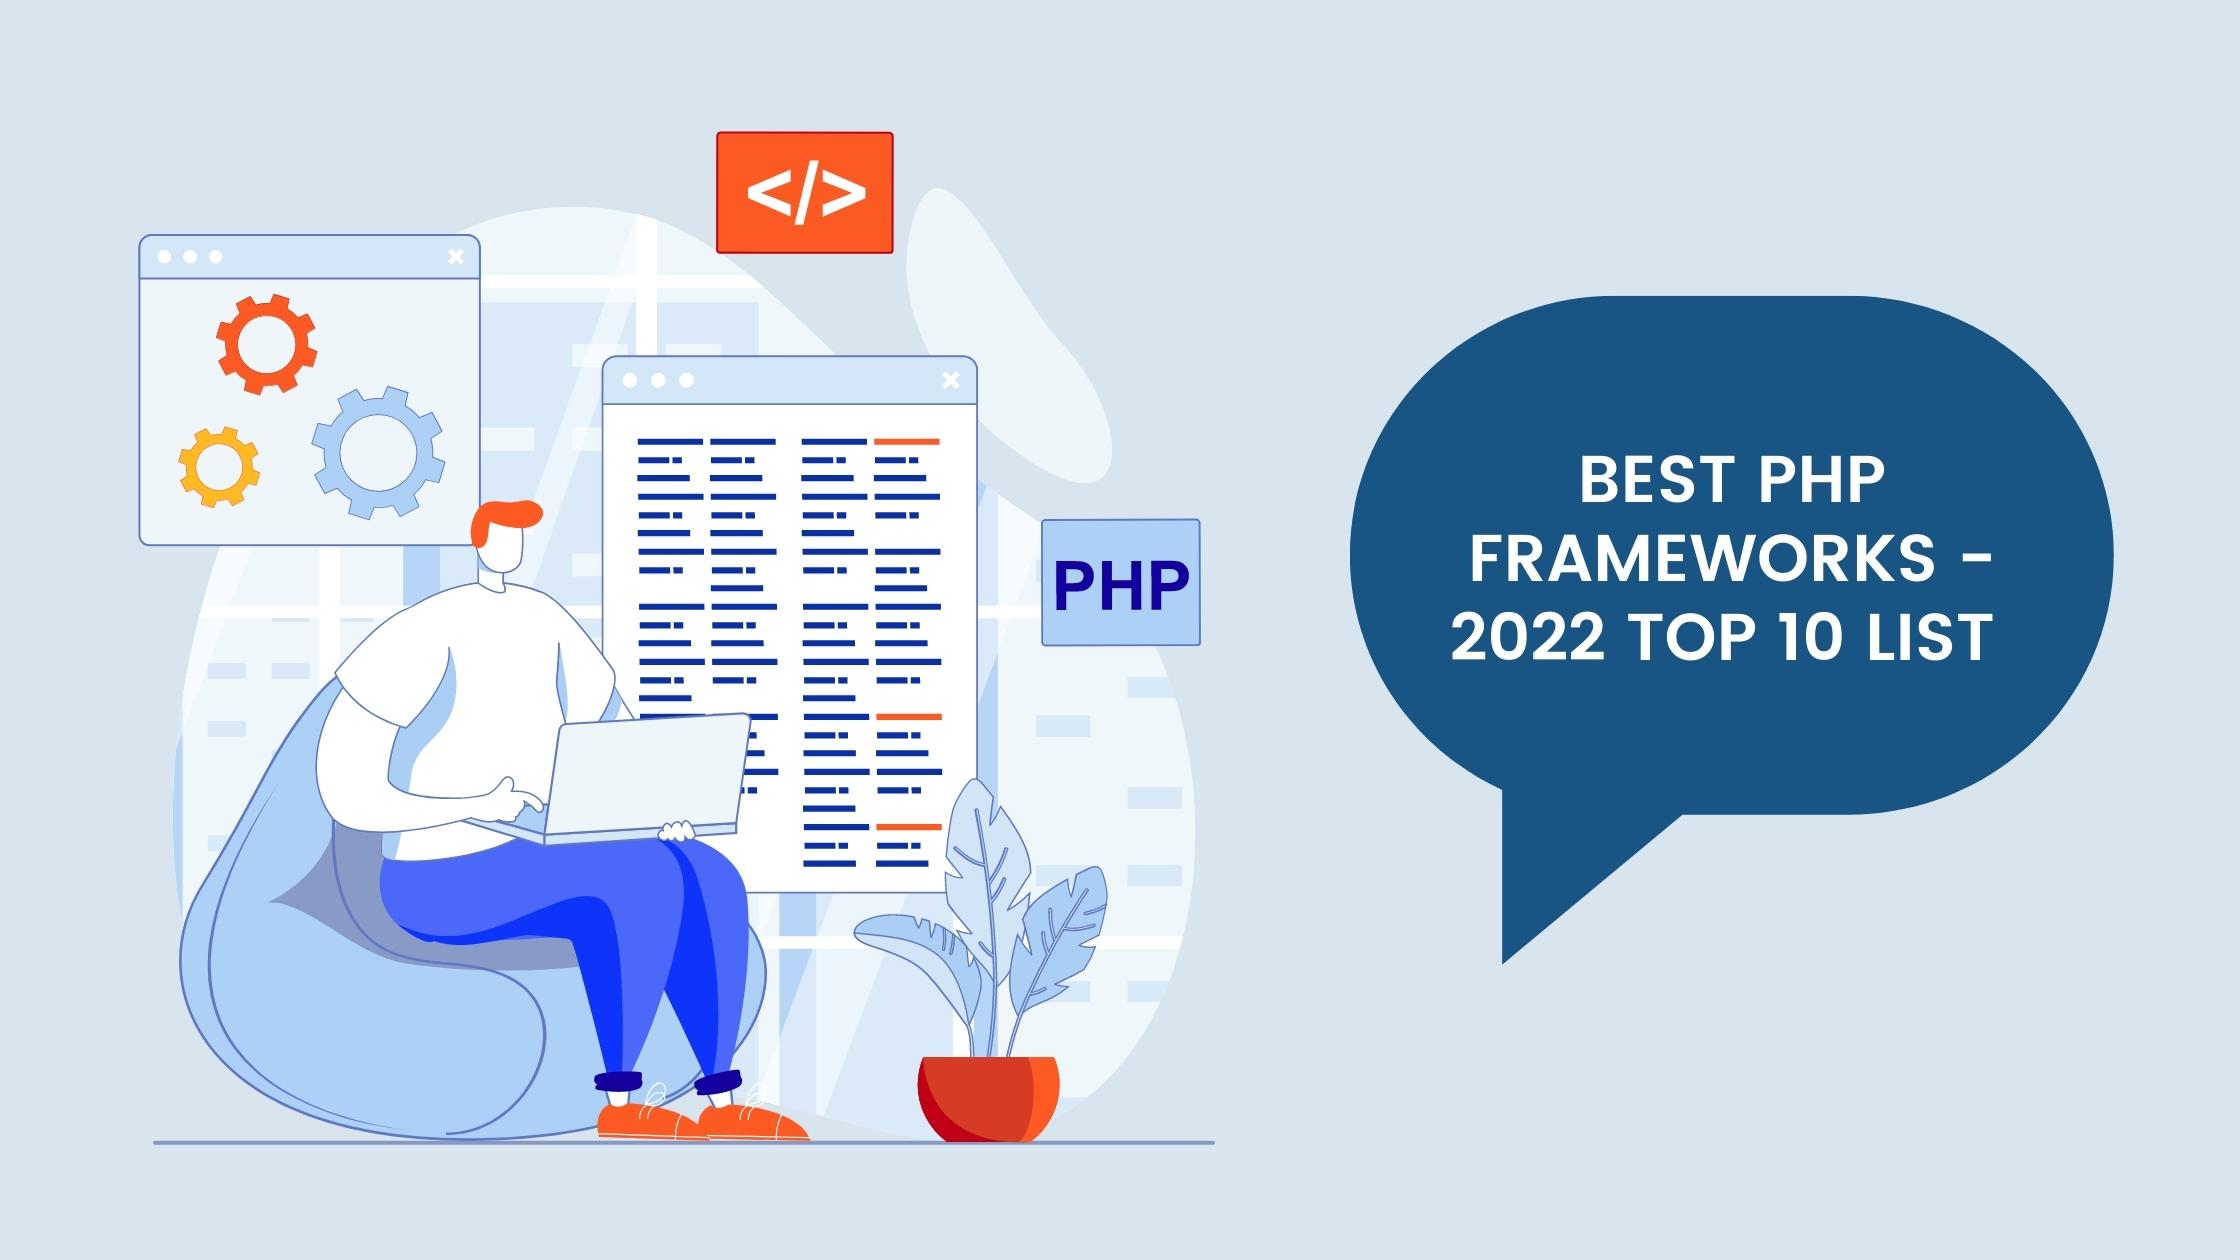 Best PHP Frameworks - 2022 Top 10 List